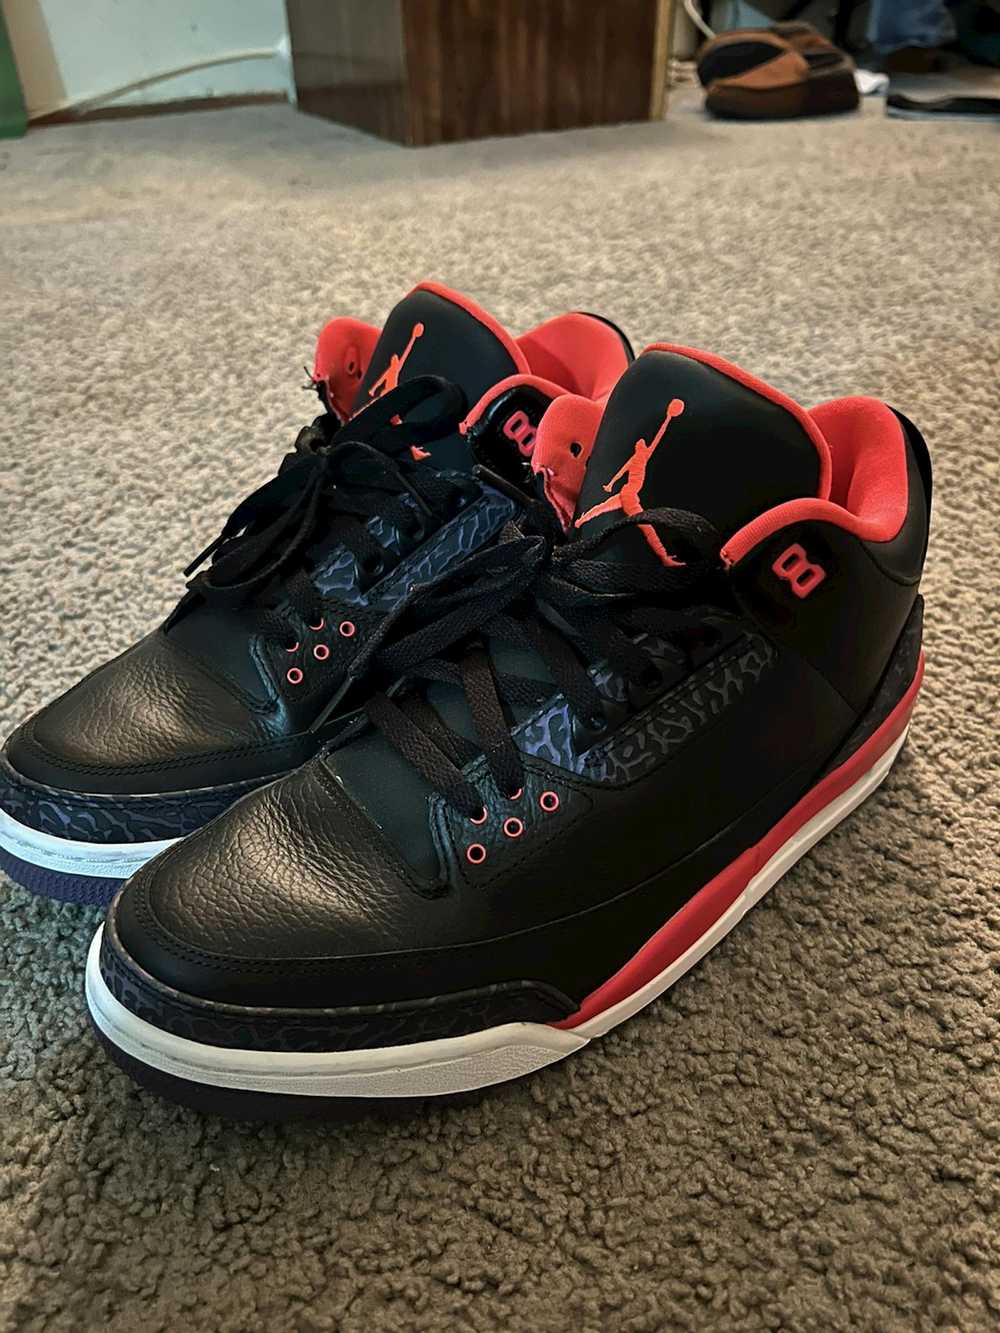 Jordan Brand Jordan 3 Crimson (2013) - image 4